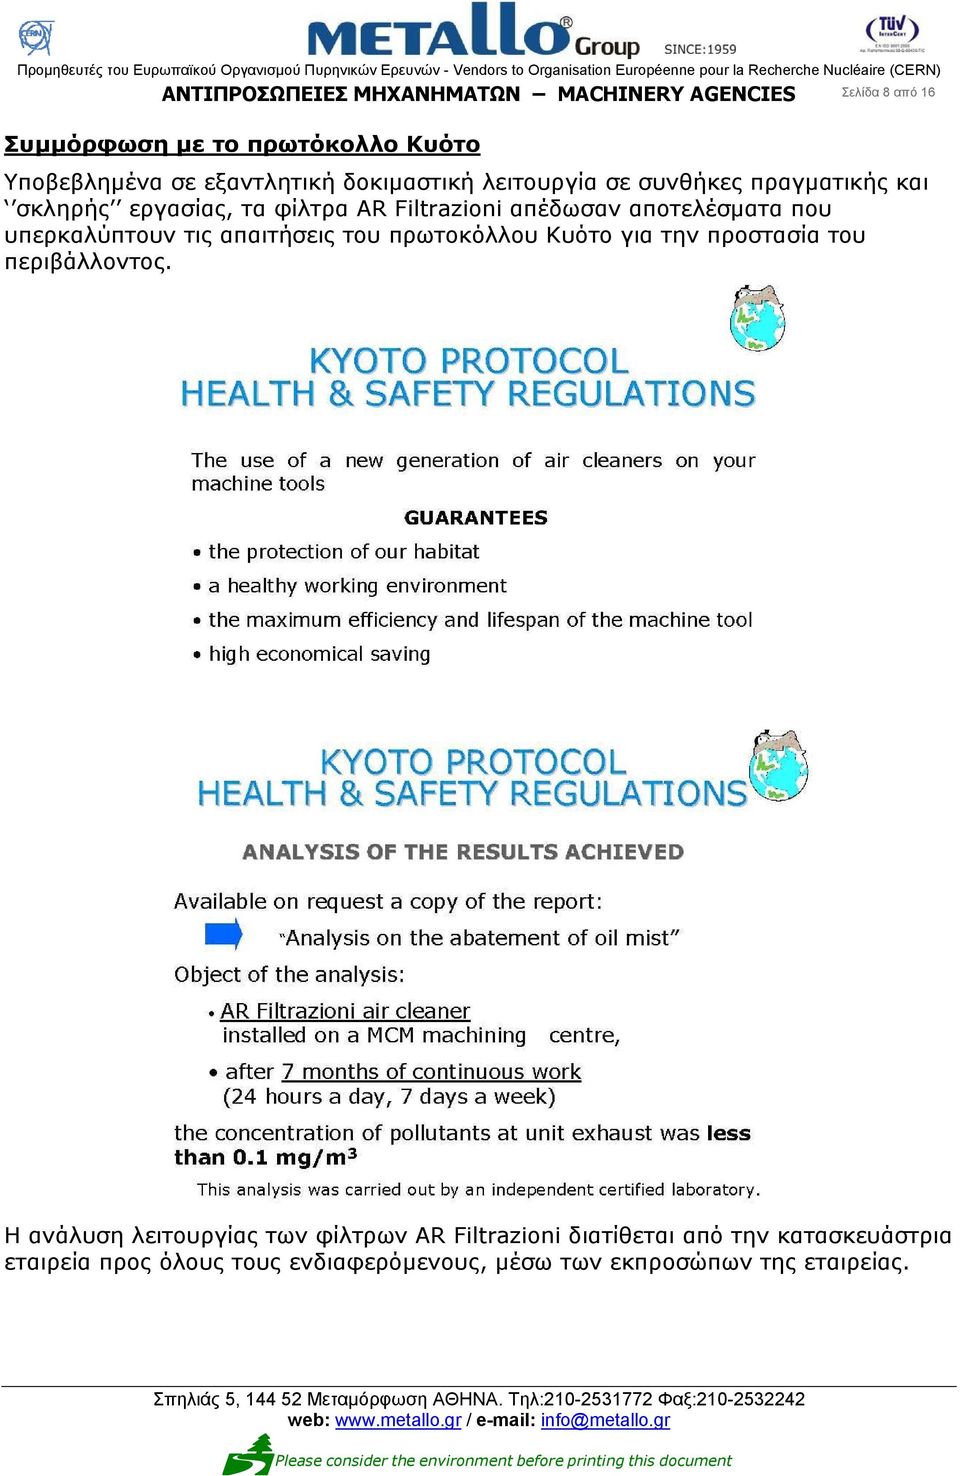 αποτελέσματα που υπερκαλύπτουν τις απαιτήσεις του πρωτοκόλλου Κυότο για την προστασία του περιβάλλοντος.